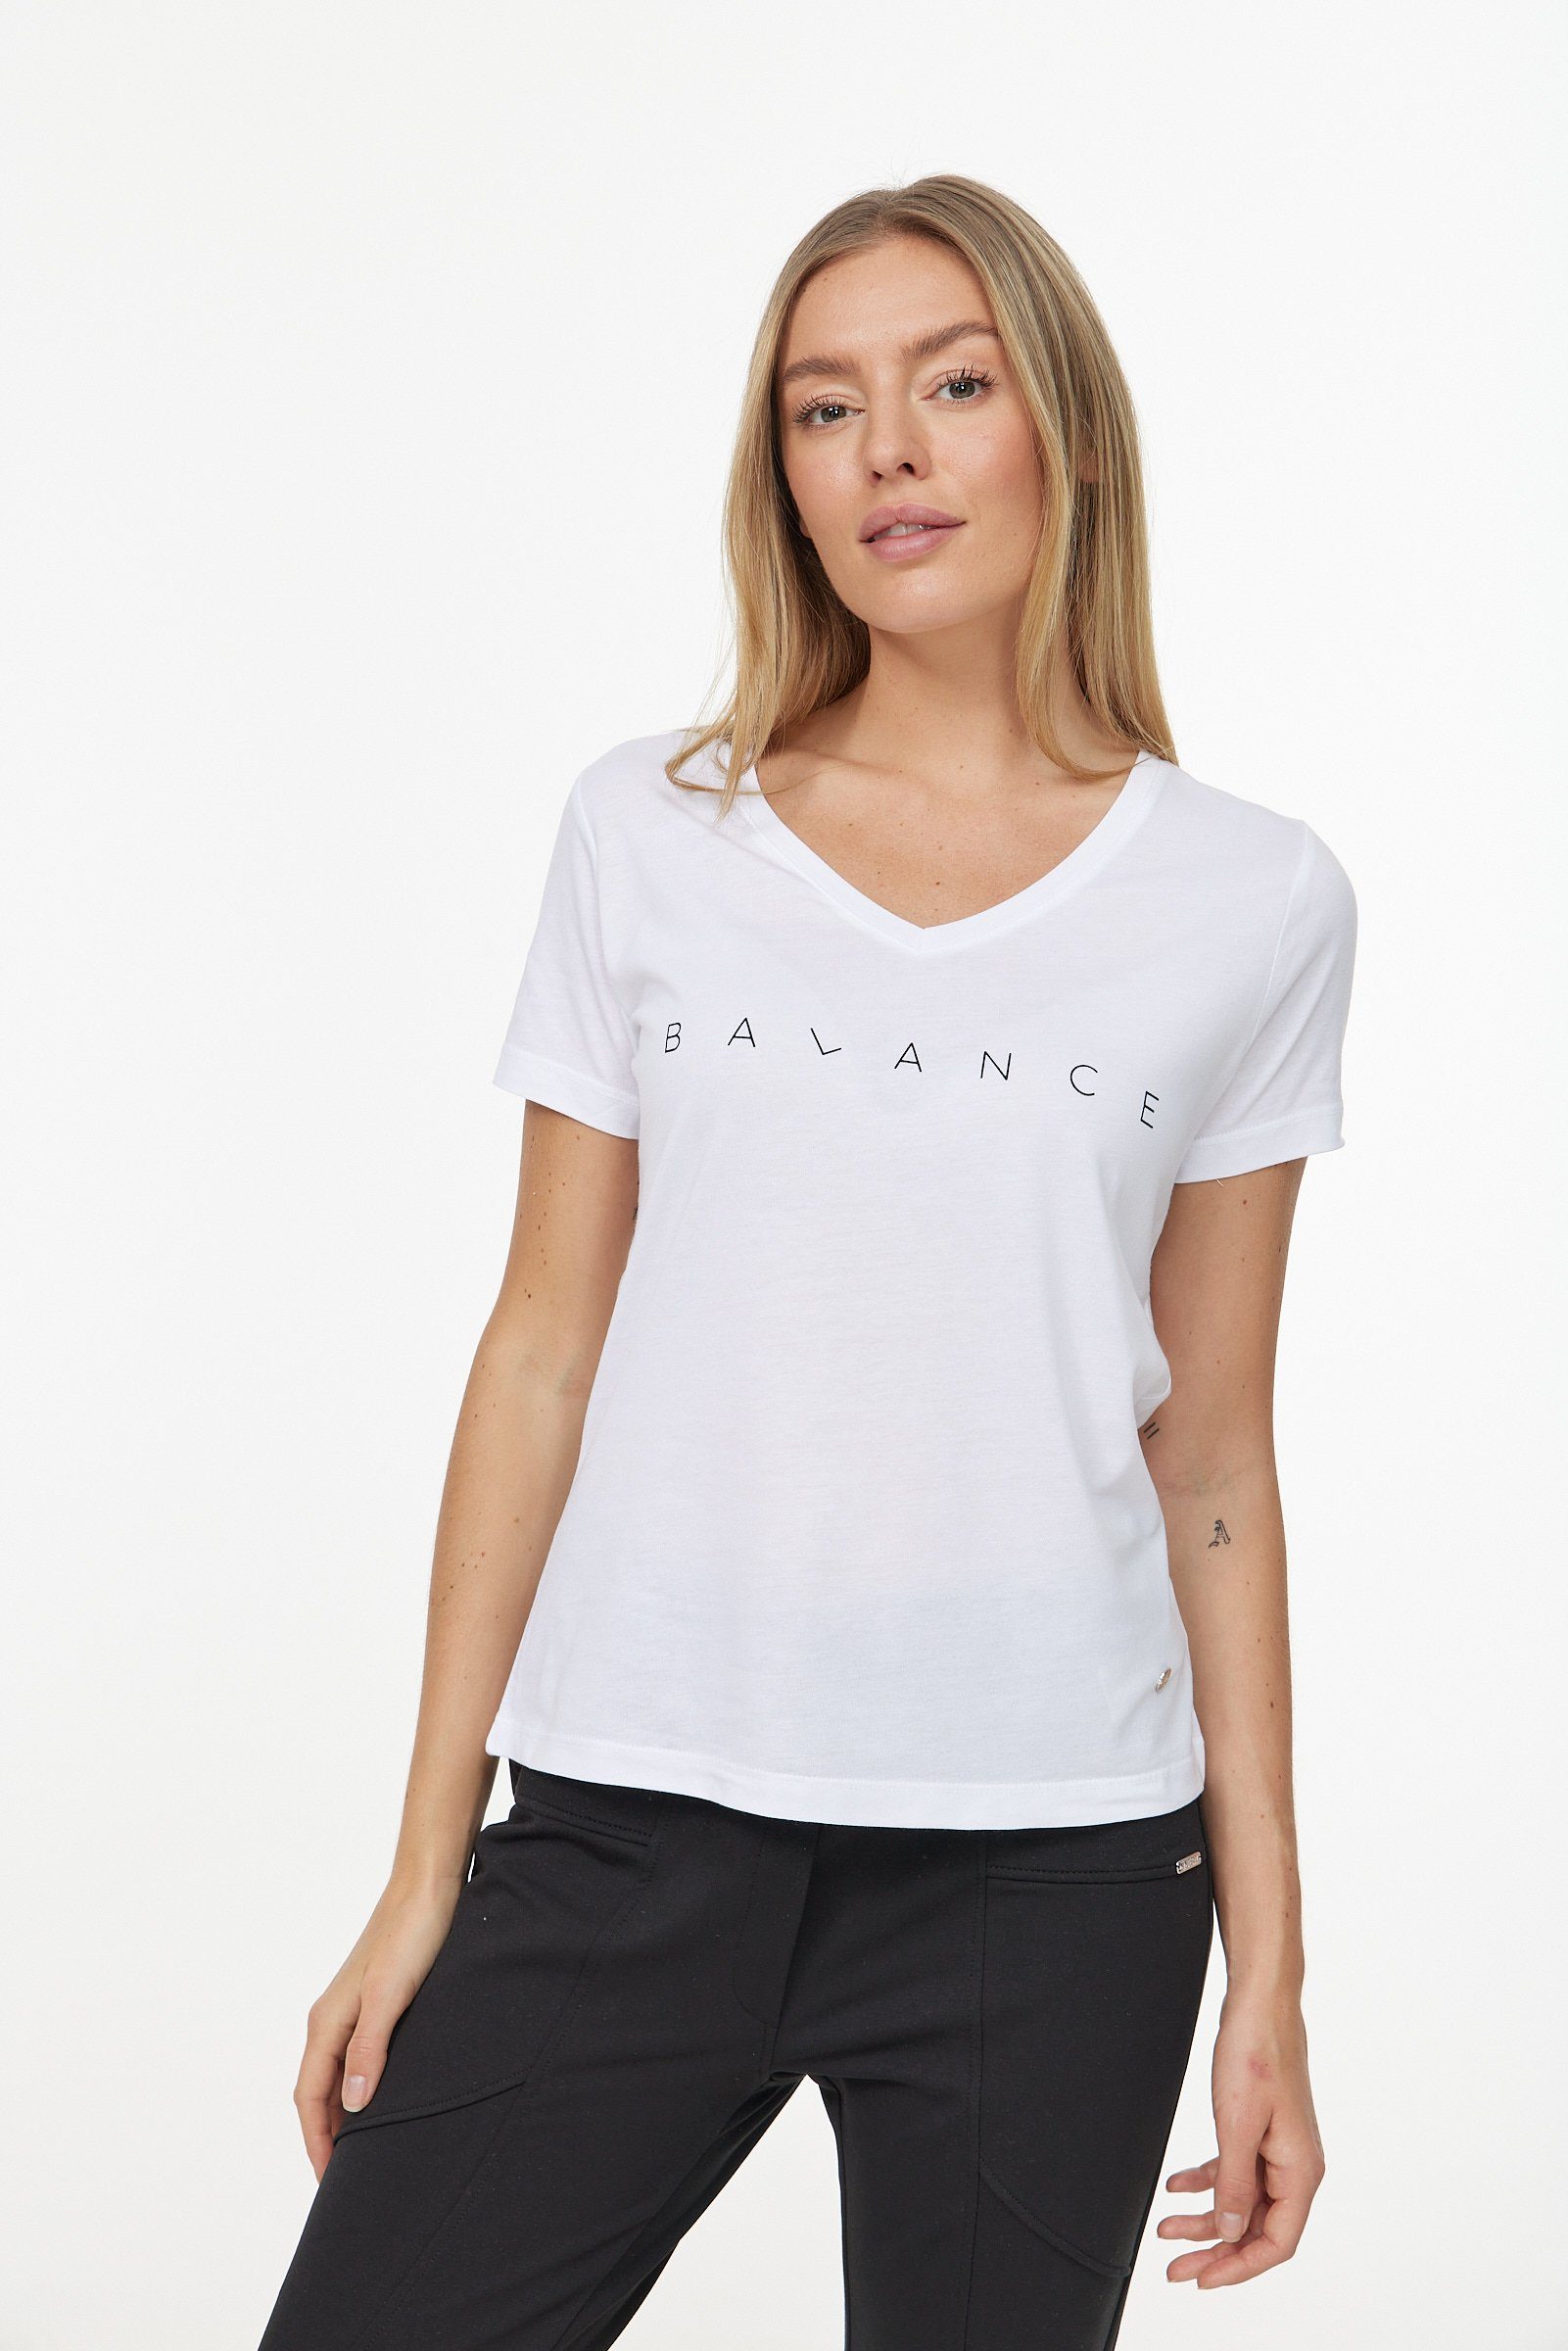 [Vertrauen zuerst und niedriger Preis] Decay T-Shirt in schlichtem Design weiß-schwarz